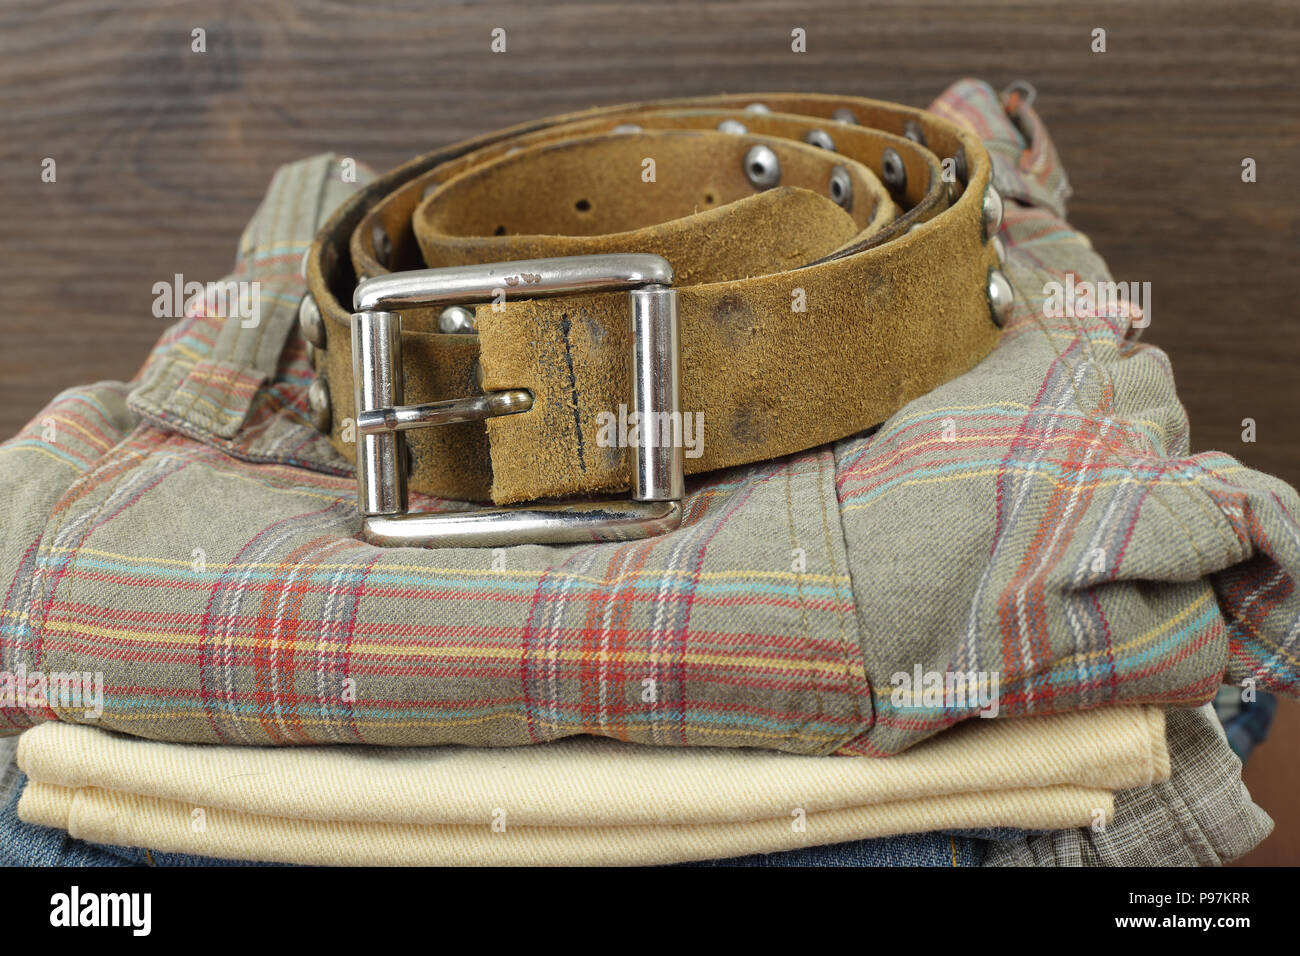 Vêtements, chaussures et accessoires - libre de ceinture de cuir et de groupe pioche de jeans colorés sur un fond de bois Banque D'Images